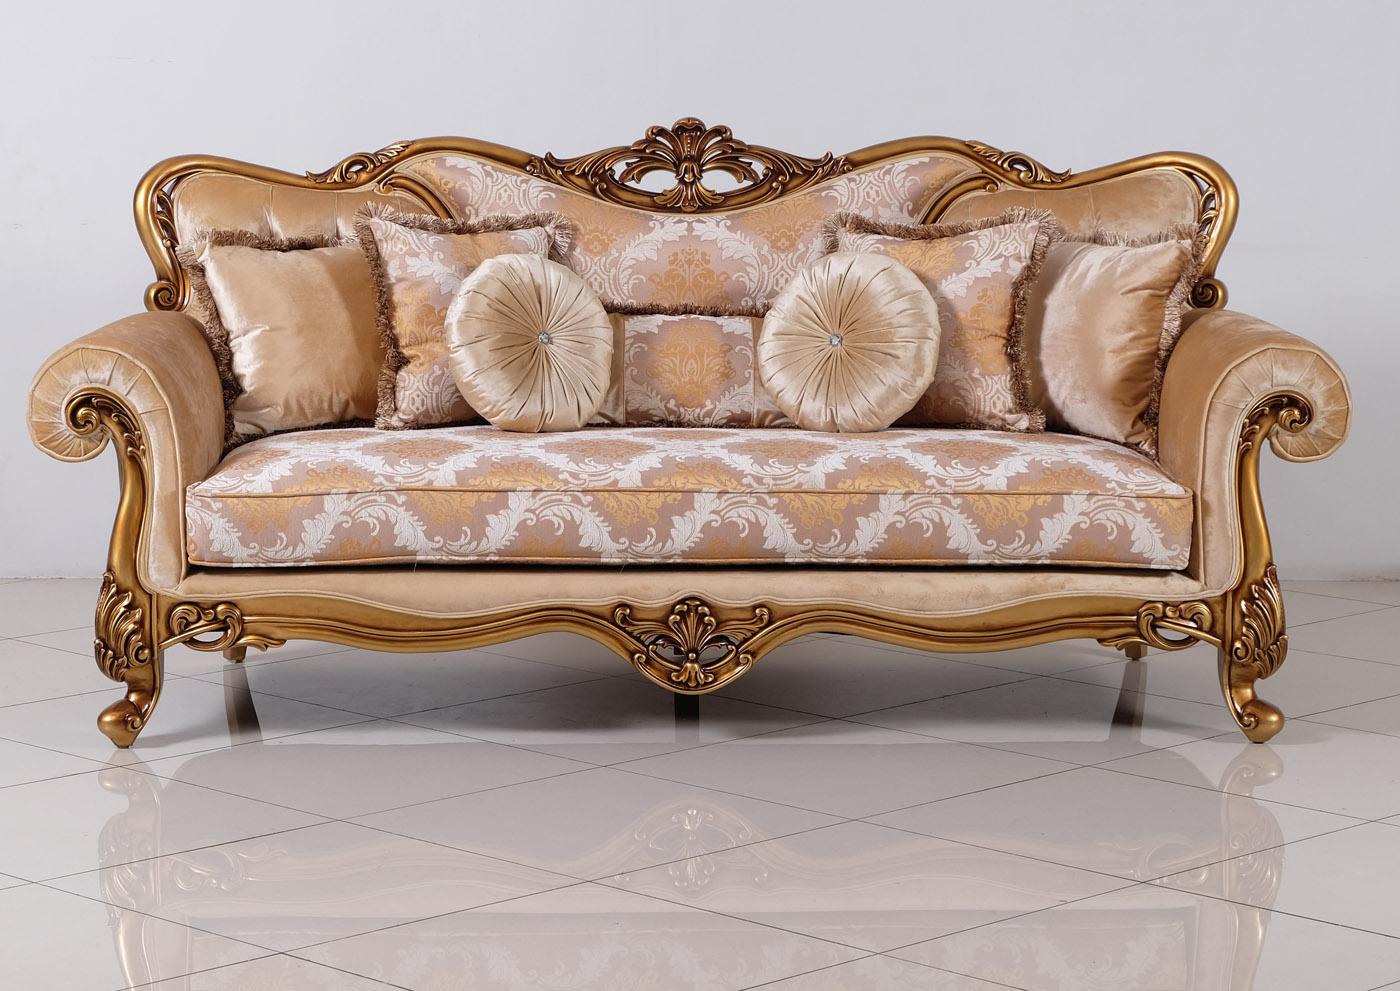 

    
Luxury Golden Bronze Wood Trim CLEOPATRA Sofa Set 4 Pcs EUROPEAN FURNITURE Classic
